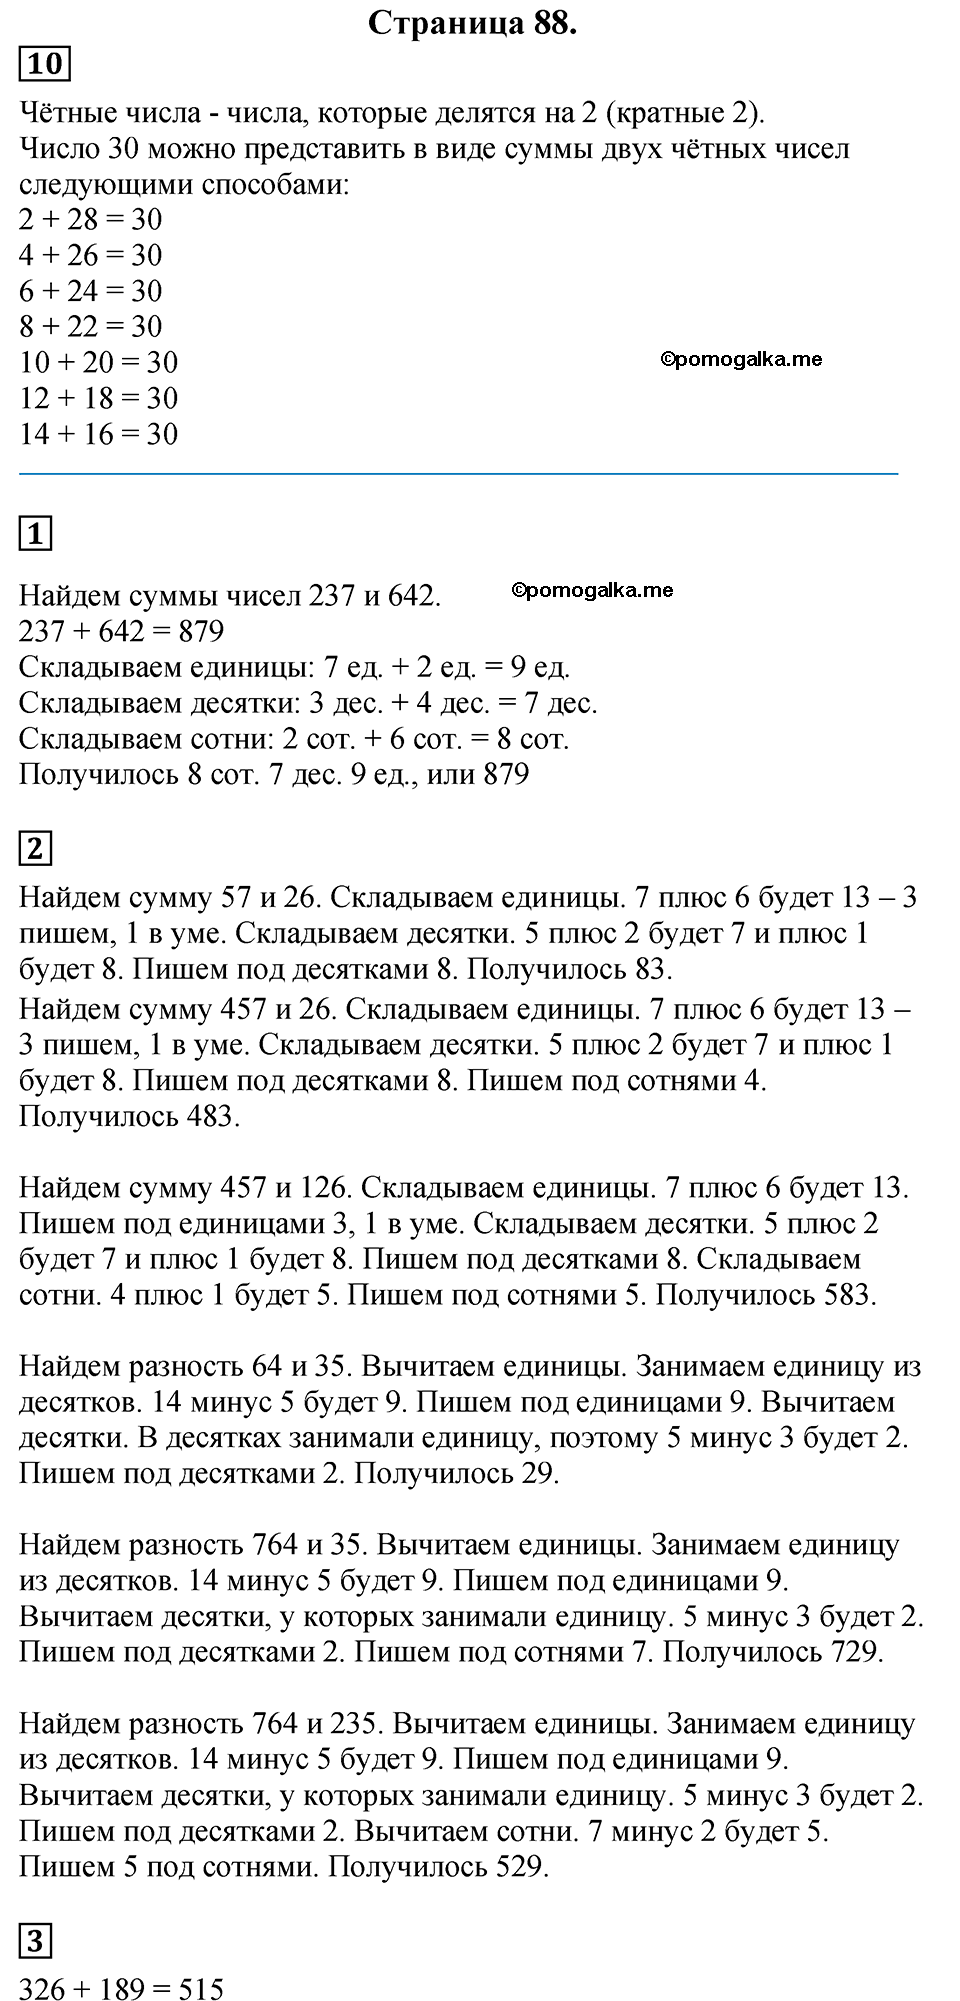 Страница №88 Часть 2 математика 3 класс Дорофеев